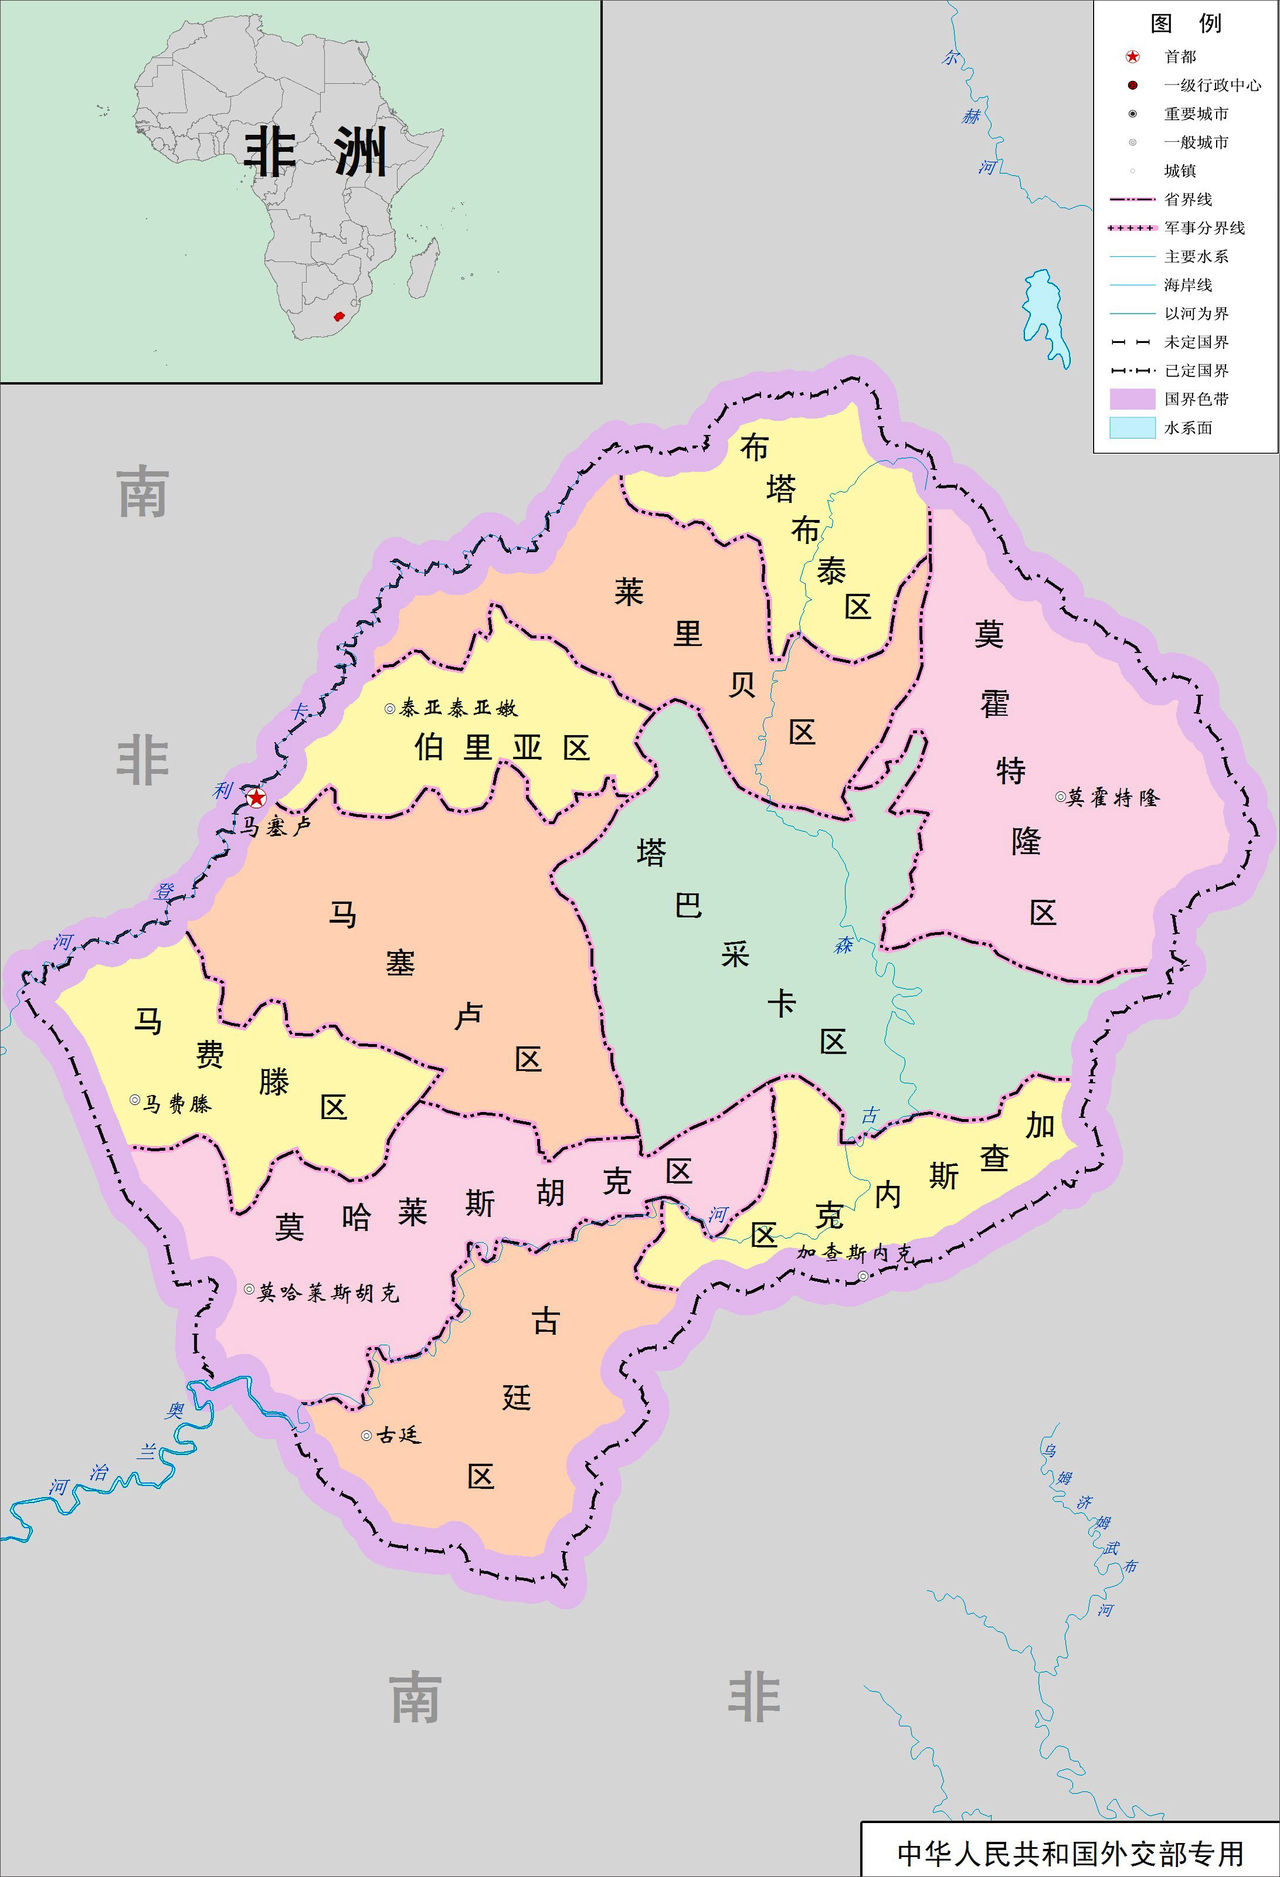 賴索托行政區劃